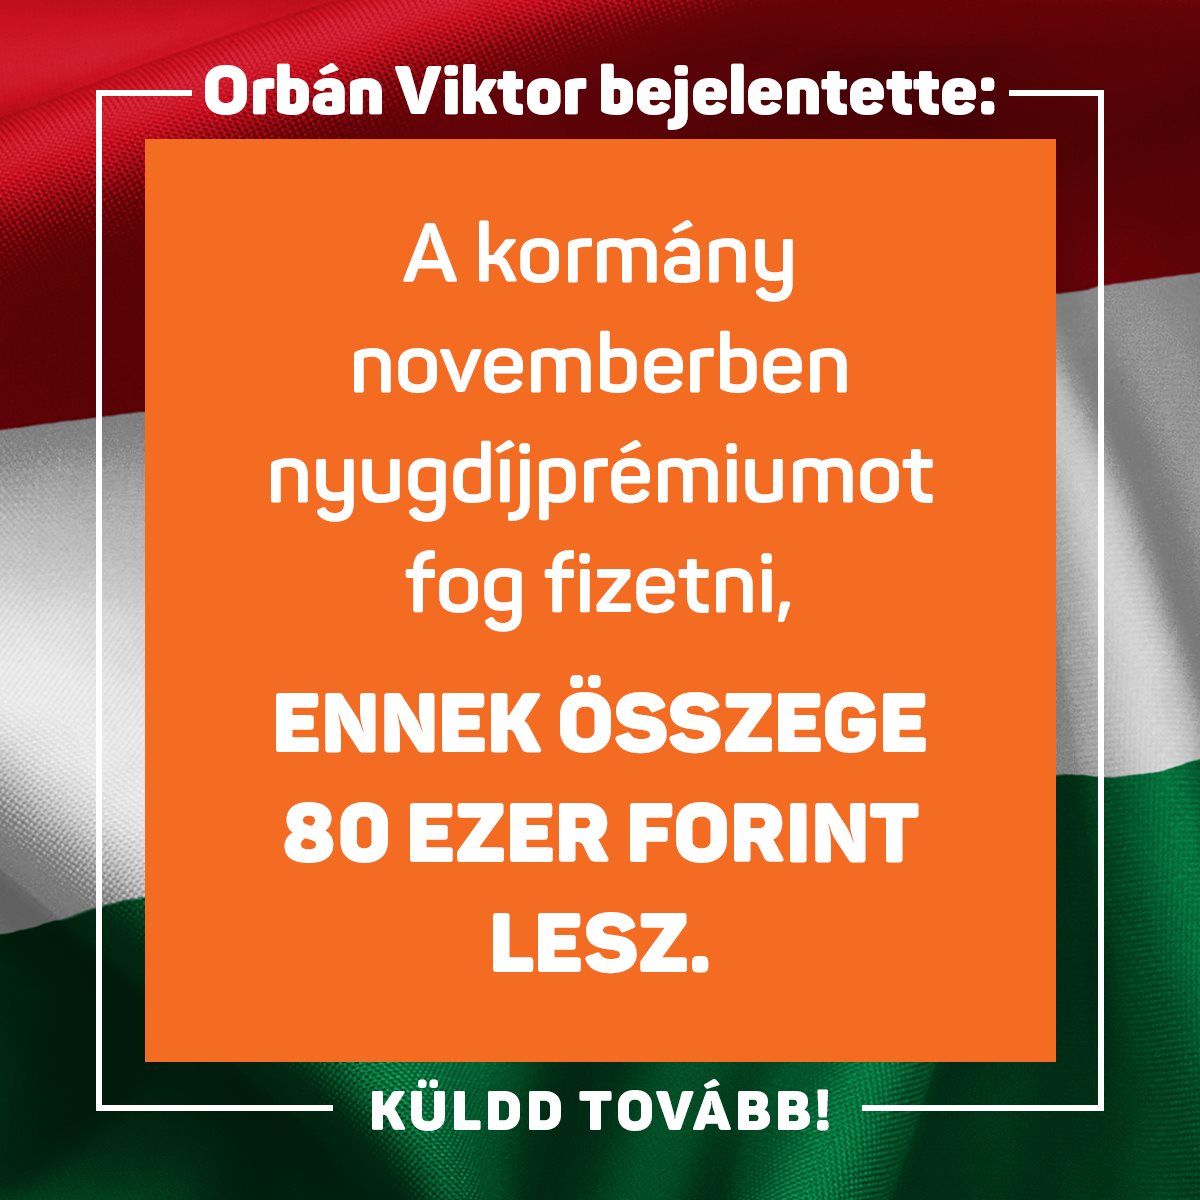 Orbán Viktor bejelentette: „Nyugdíjprémiumot fogunk fizetni november hónapban, ennek összege 80 ezer forint lesz.” Küldd tovább!